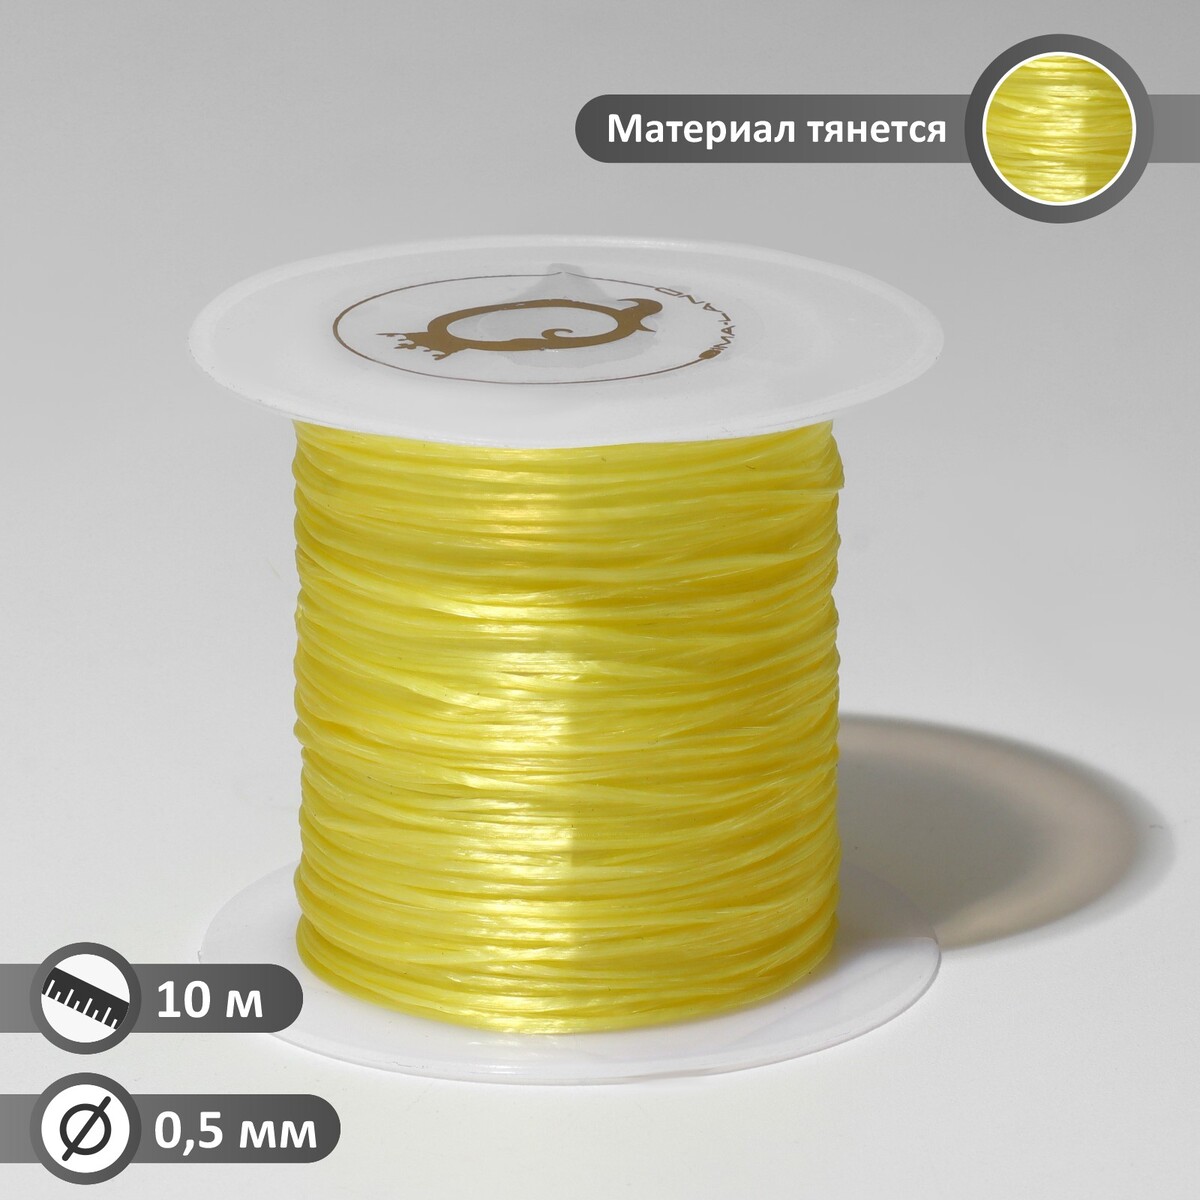 Нить силиконовая (резинка) d=0,5 мм, l=10 м (прочность 2250 денье), цвет желтый нить силиконовая резинка d 0 5мм l 400м прочность 2500 денье